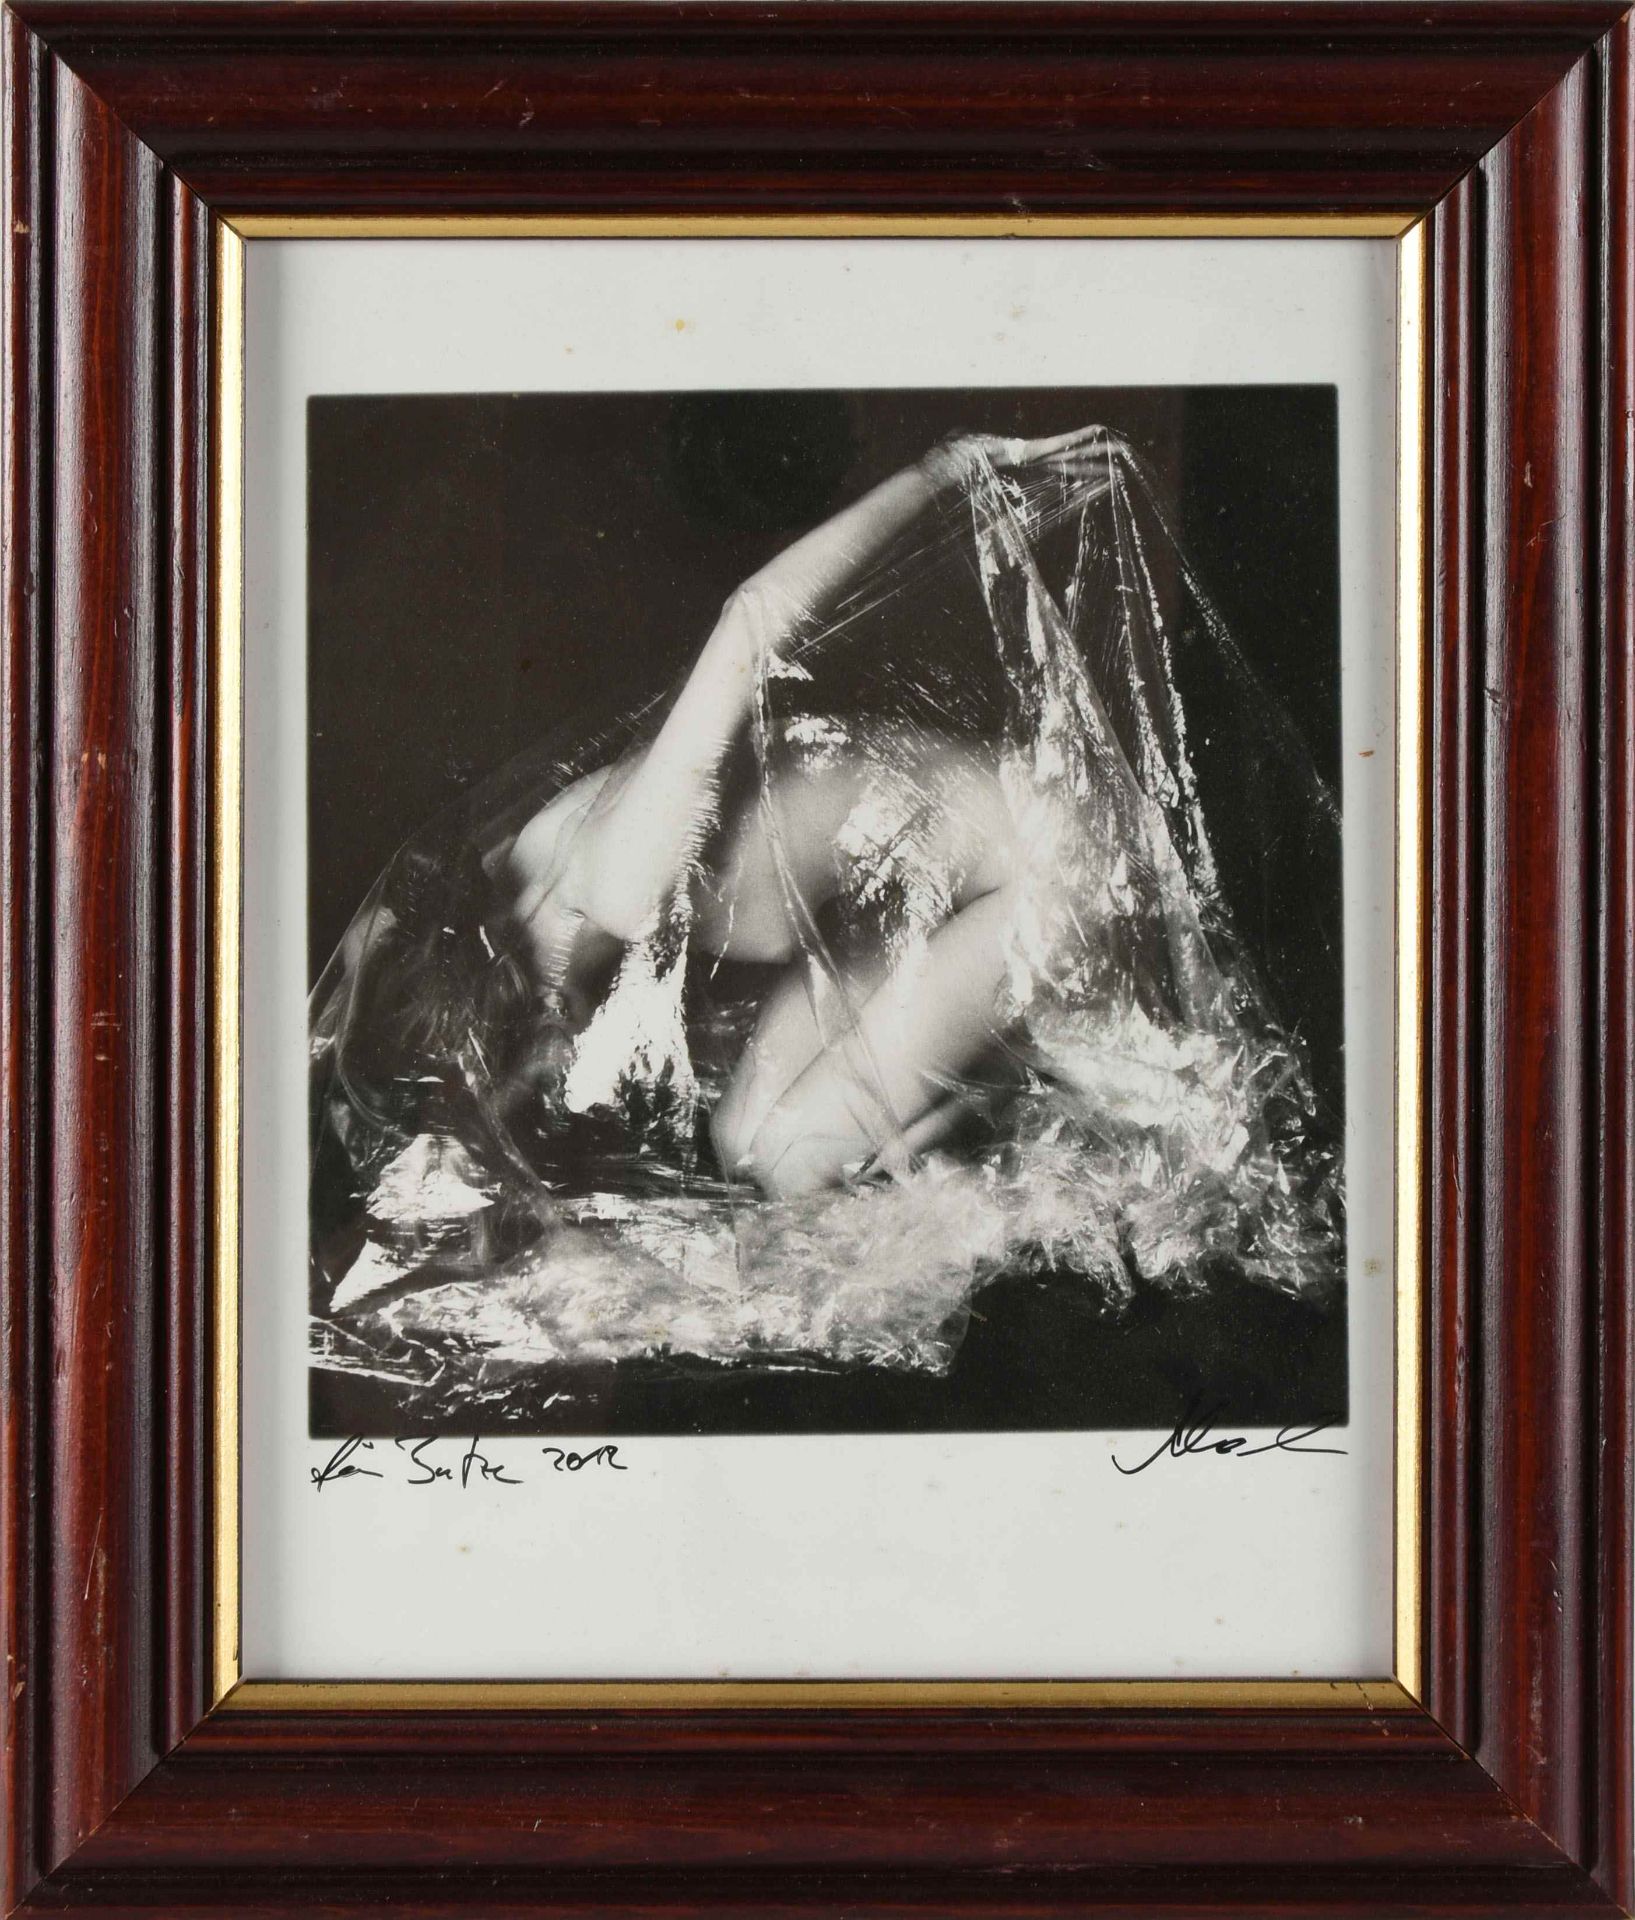 Abraham, Sven Reproduktion einer Fotografie, erotischer Frauenakt, unten signiert, 2012 datiert - Bild 3 aus 4